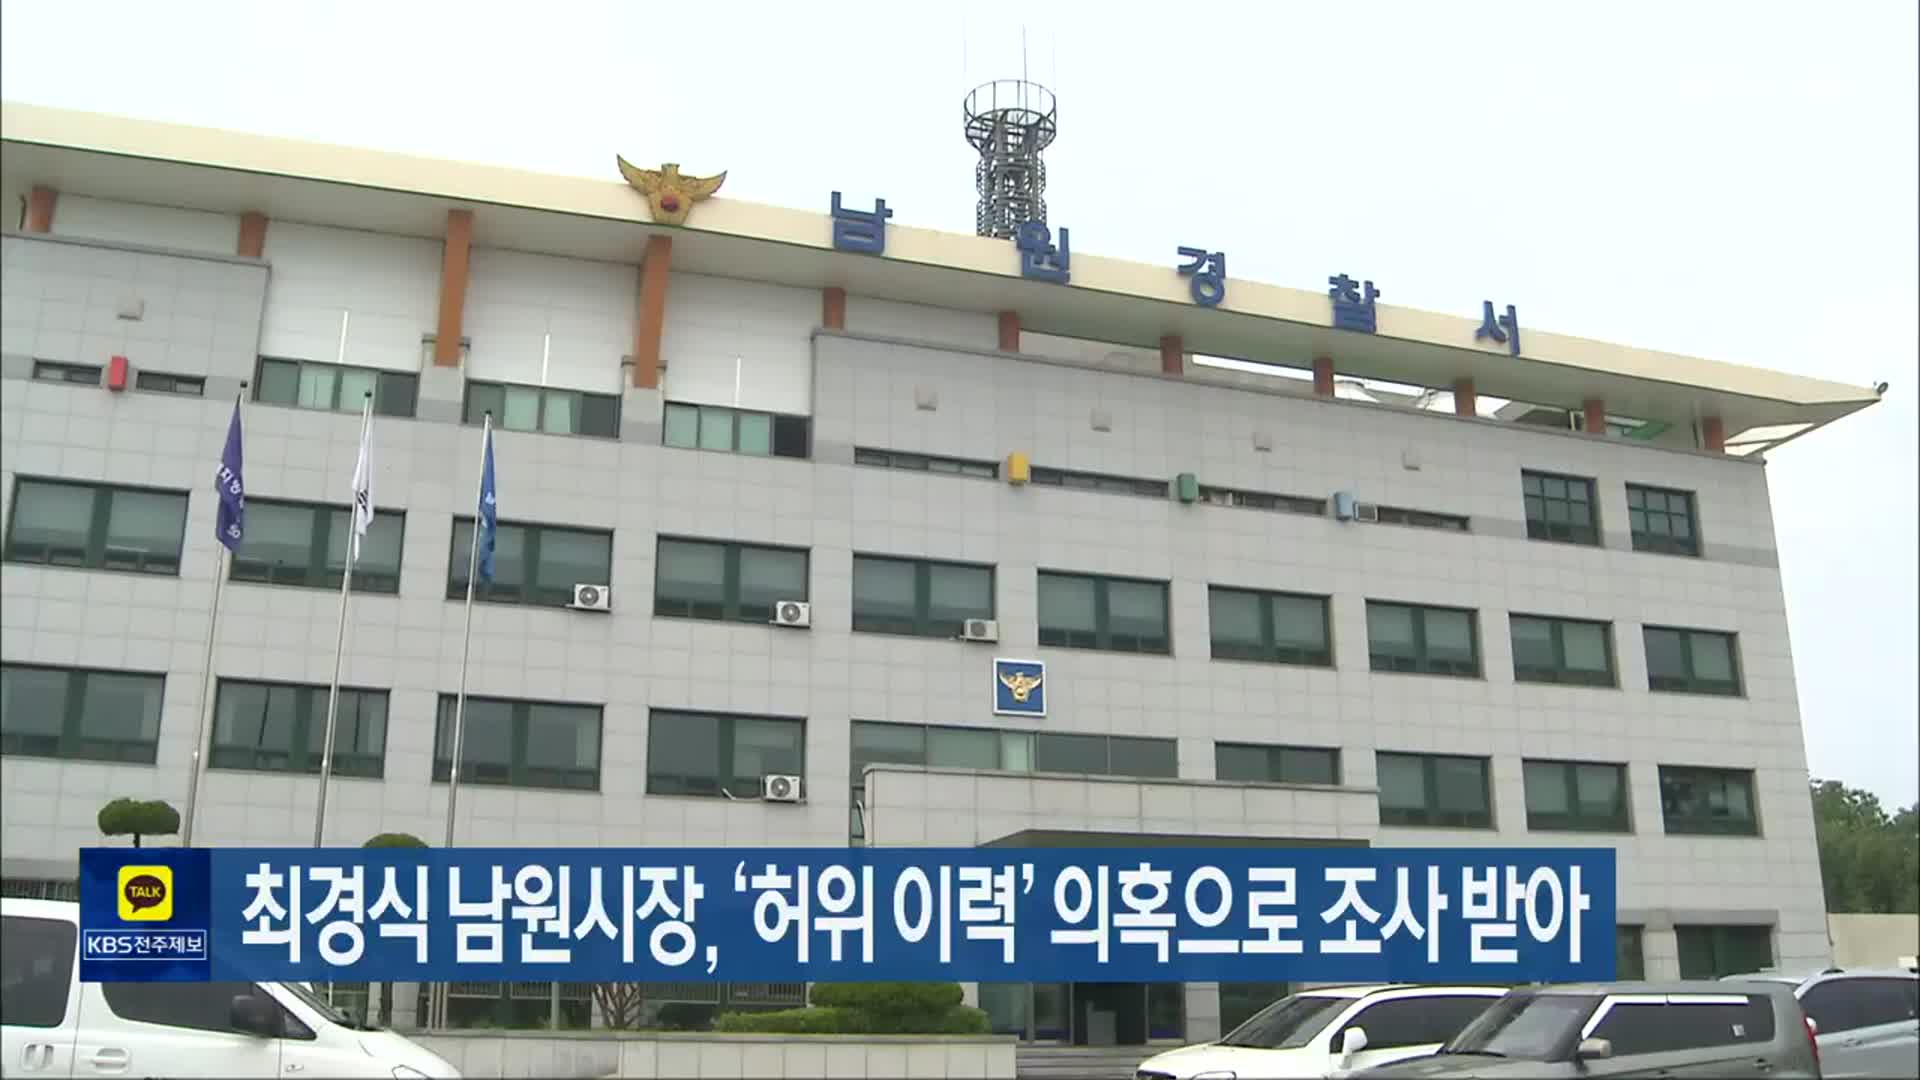 최경식 남원시장, ‘허위 이력’ 의혹으로 조사 받아